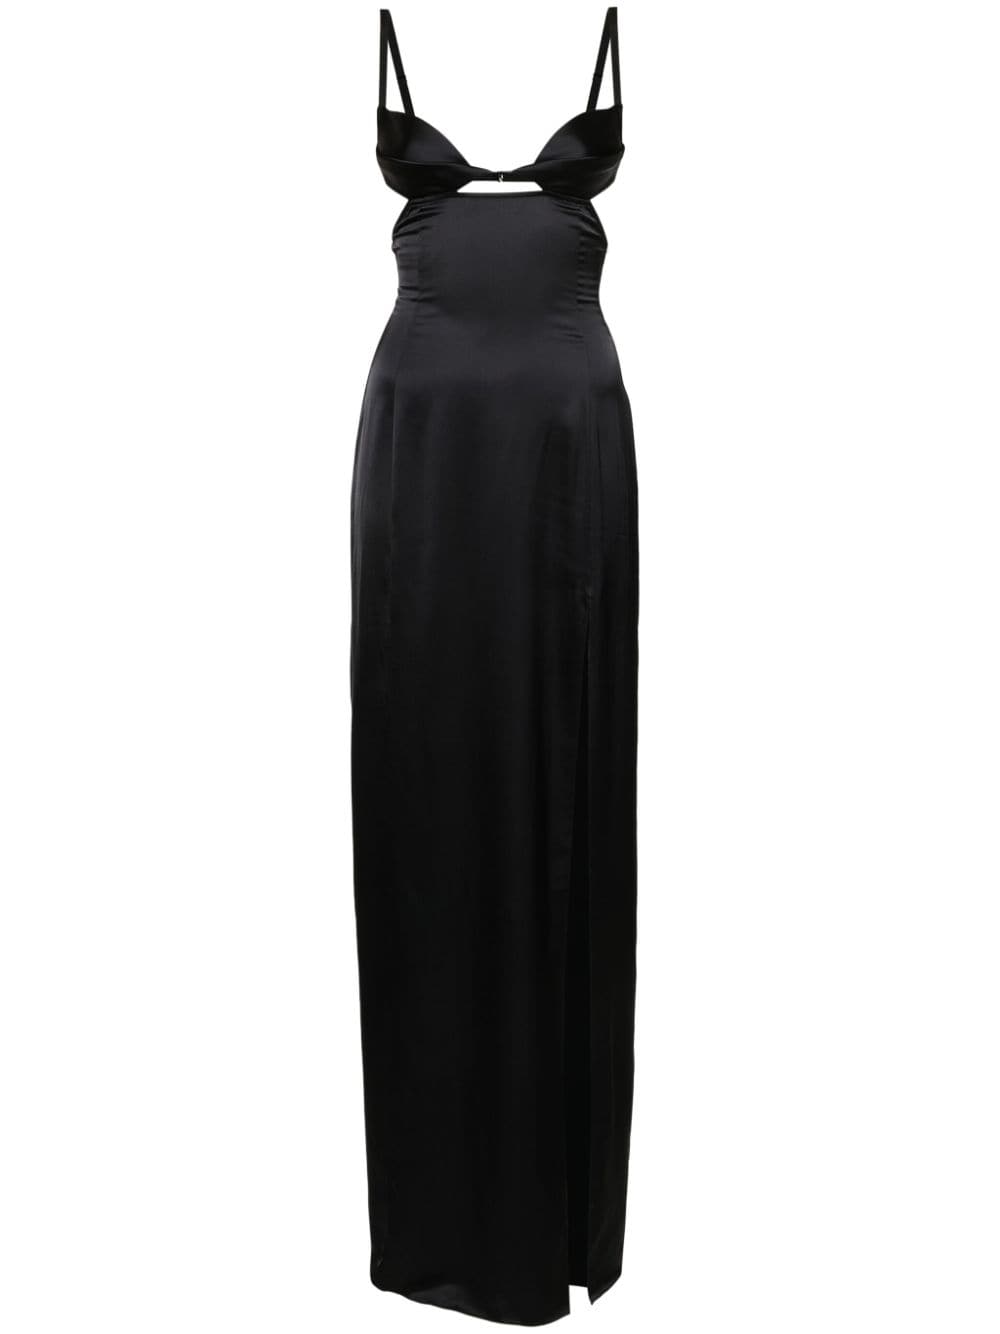 Nensi Dojaka cut-out detail satin dress - Black von Nensi Dojaka